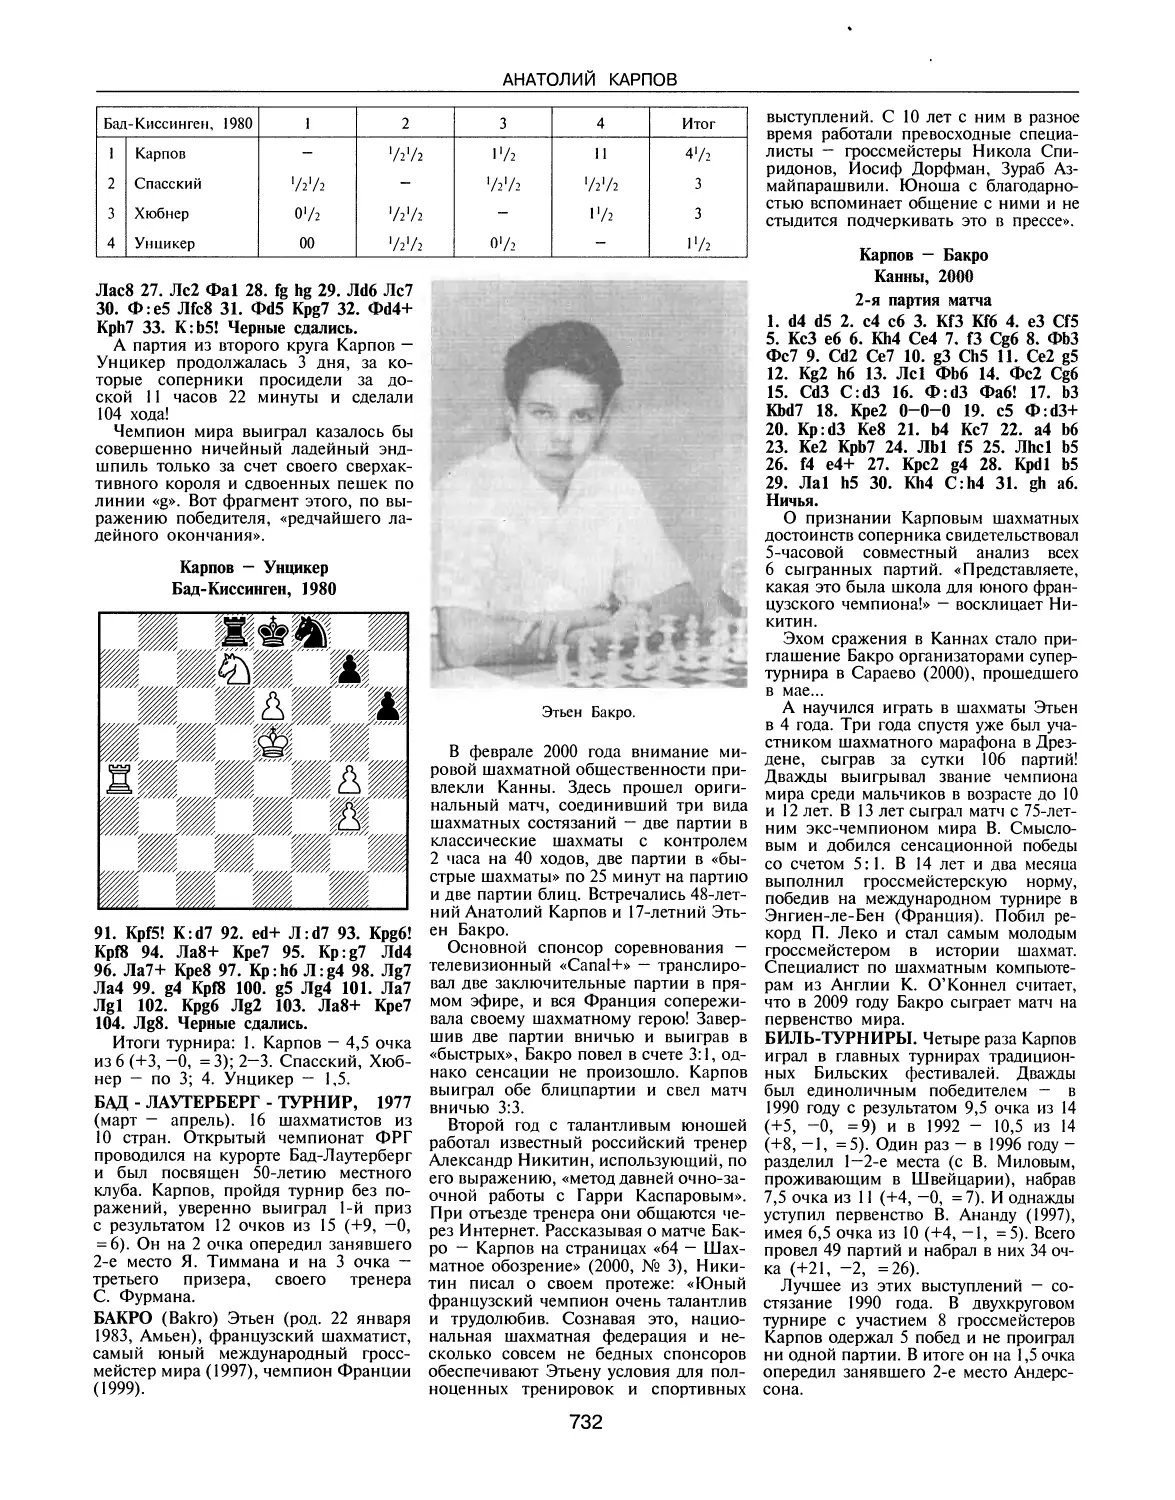 Бад-Лаутерберг-турнир, 1977
Бакро Э.
Биль-турниры